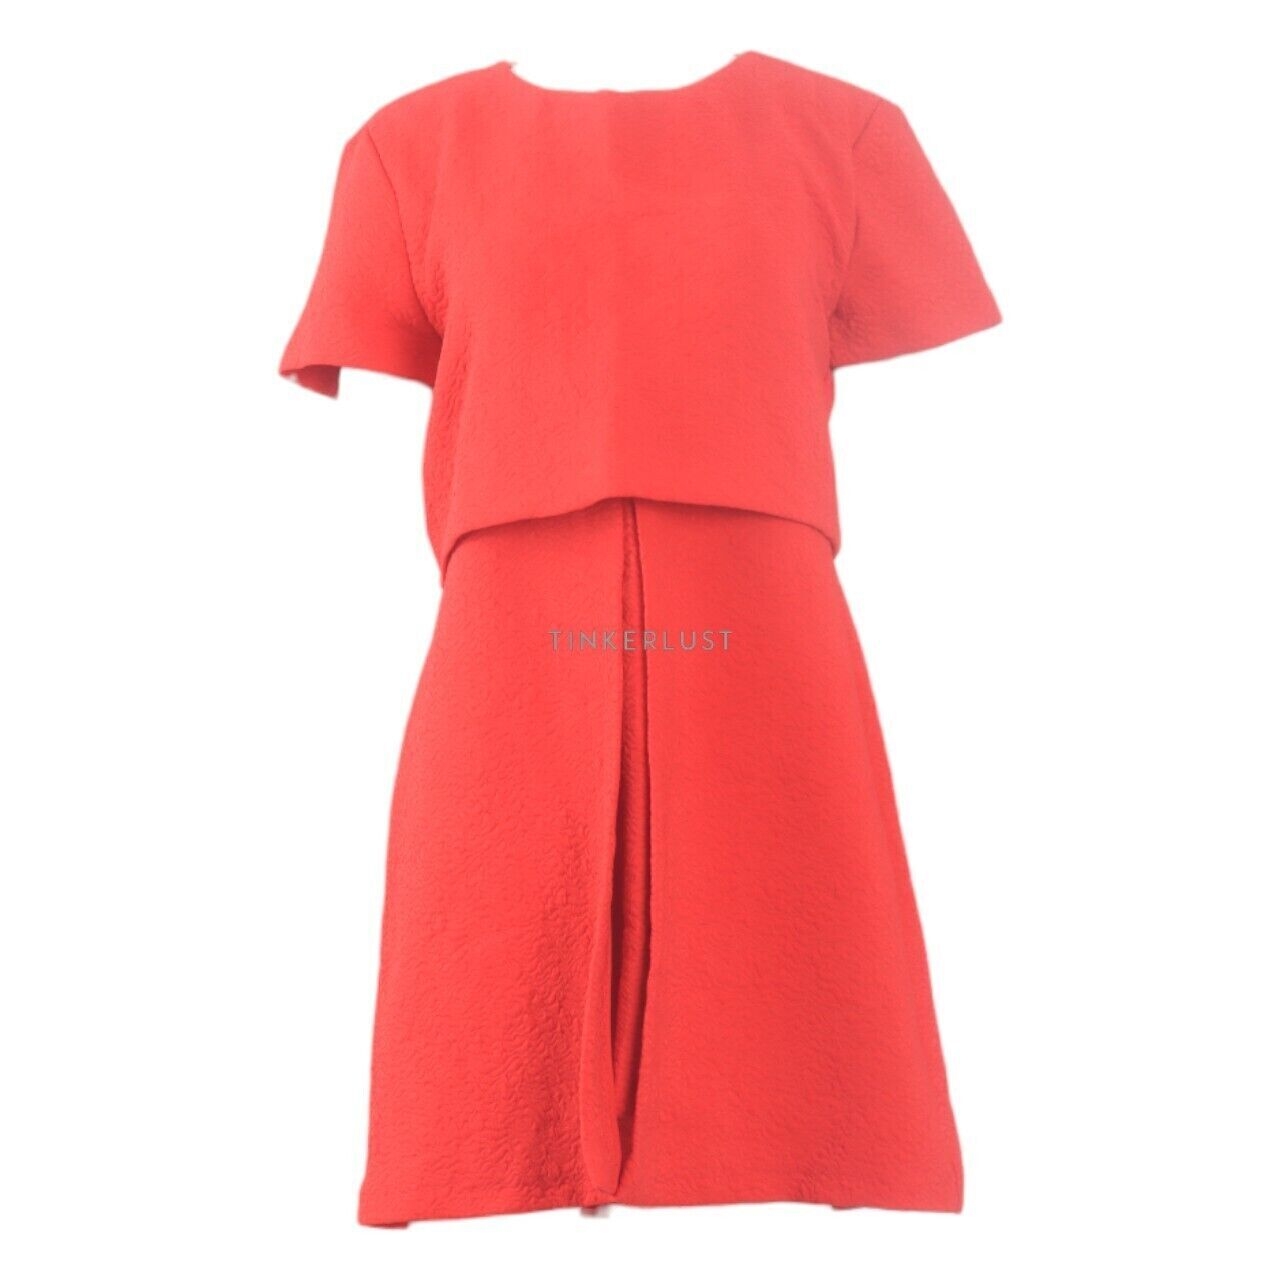 Zara Red Mini Dress